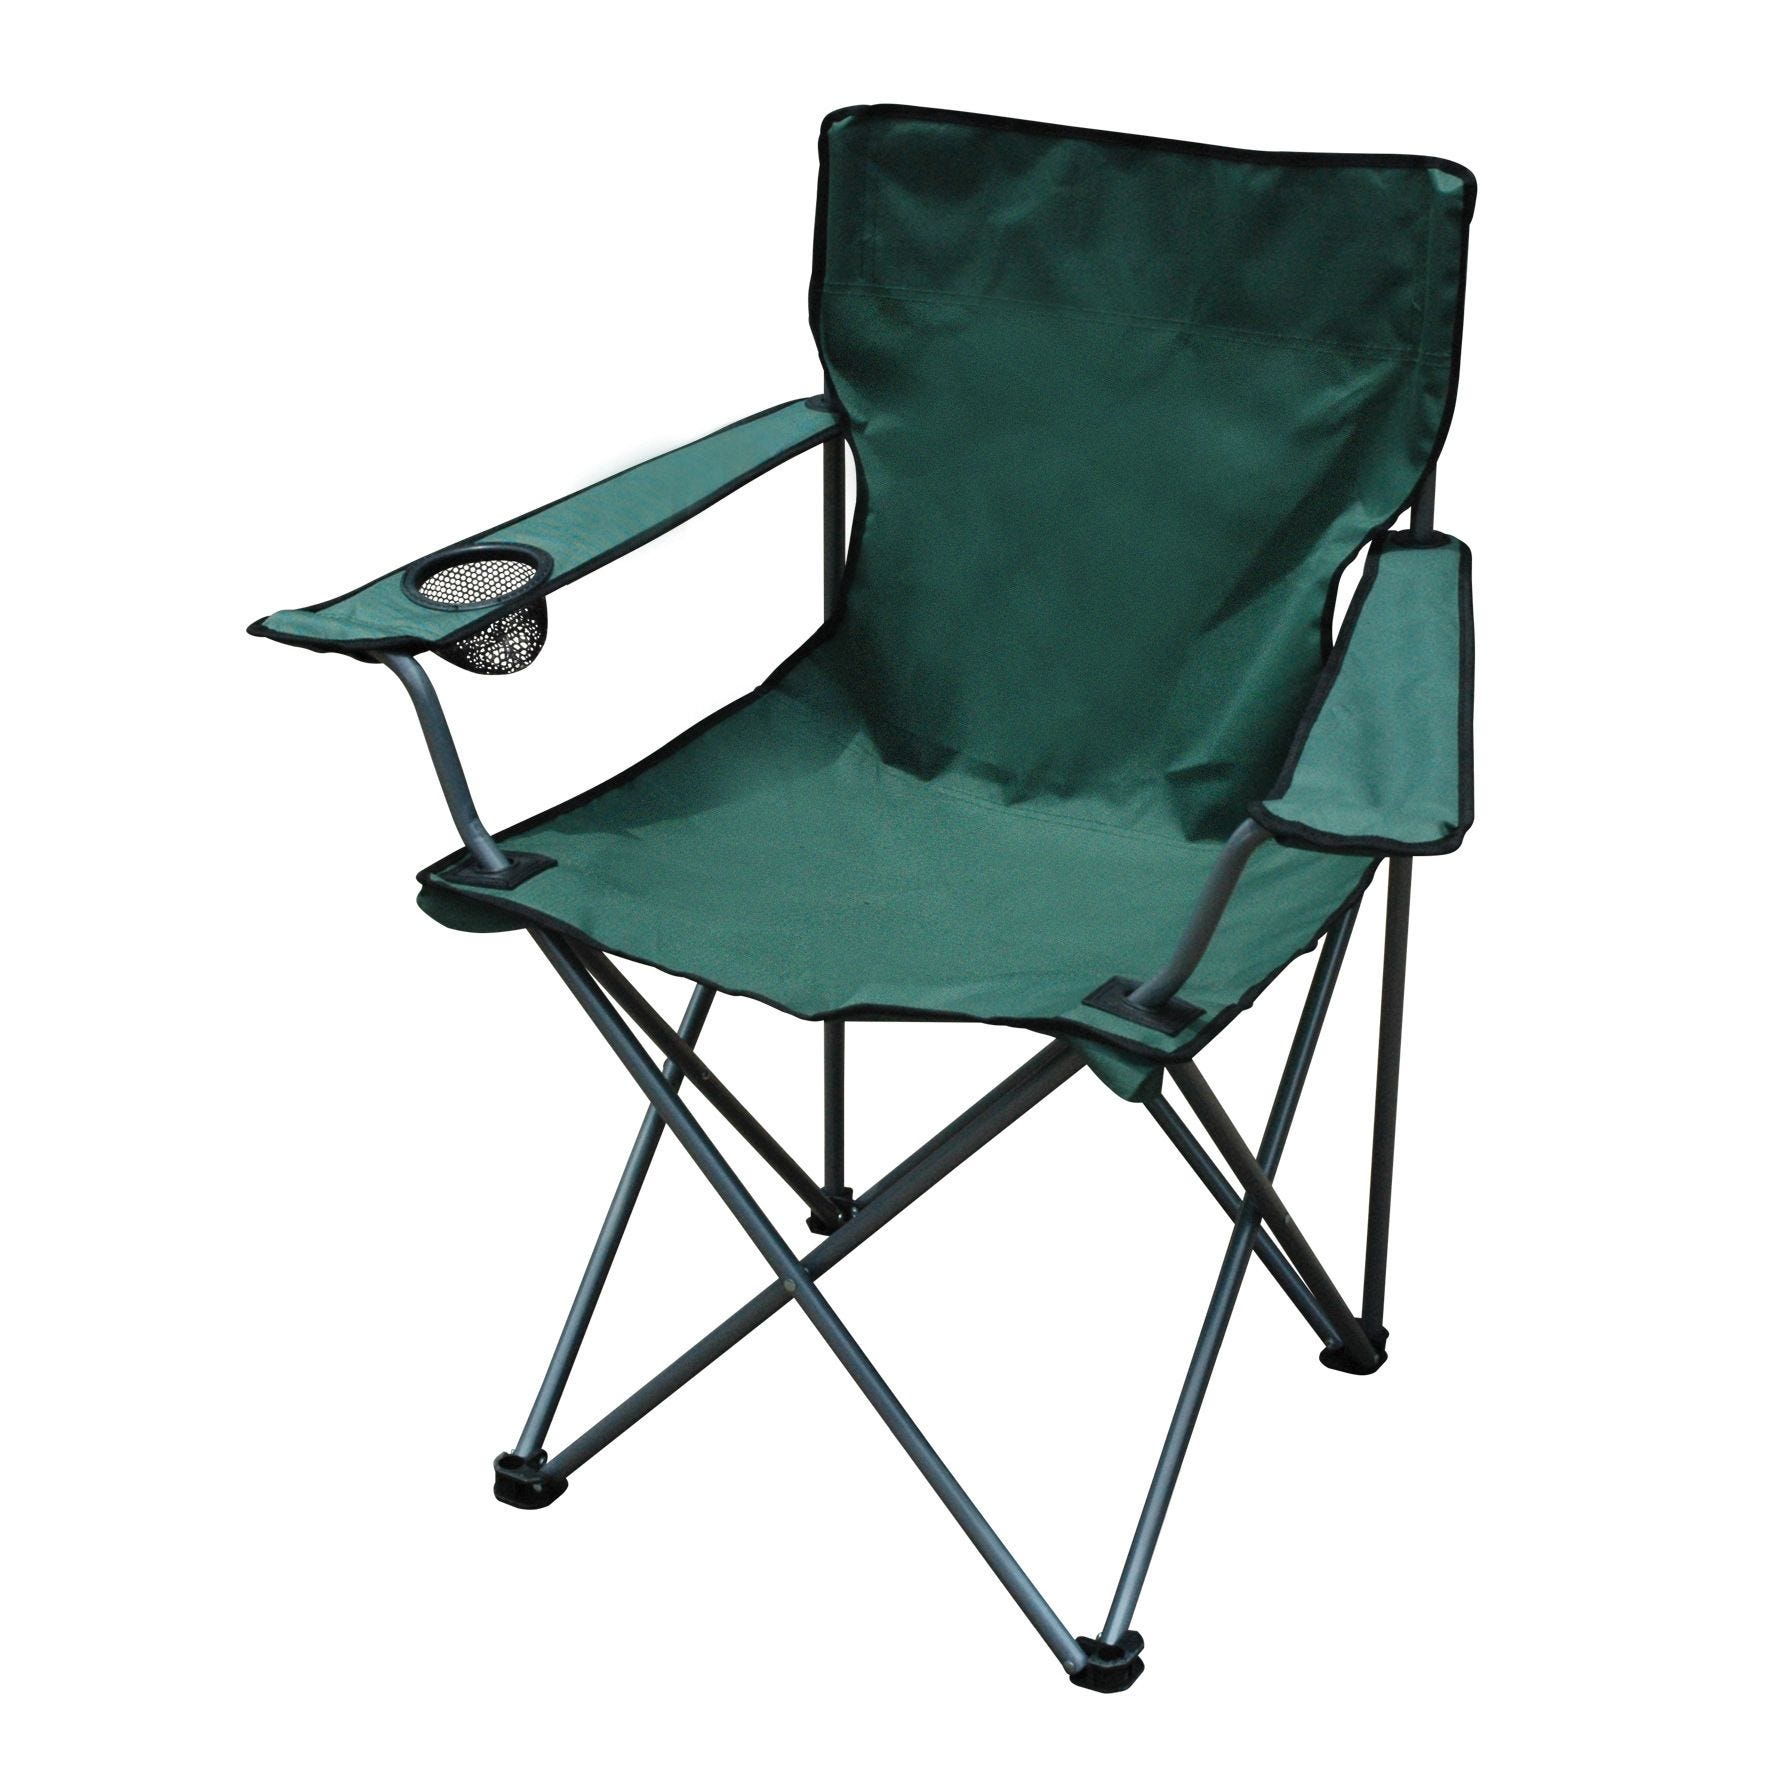 Scaun de camping, design pliabil, dimensiune 81 x 52 x 85 cm, material cadru metal, extensibil, culoare verde